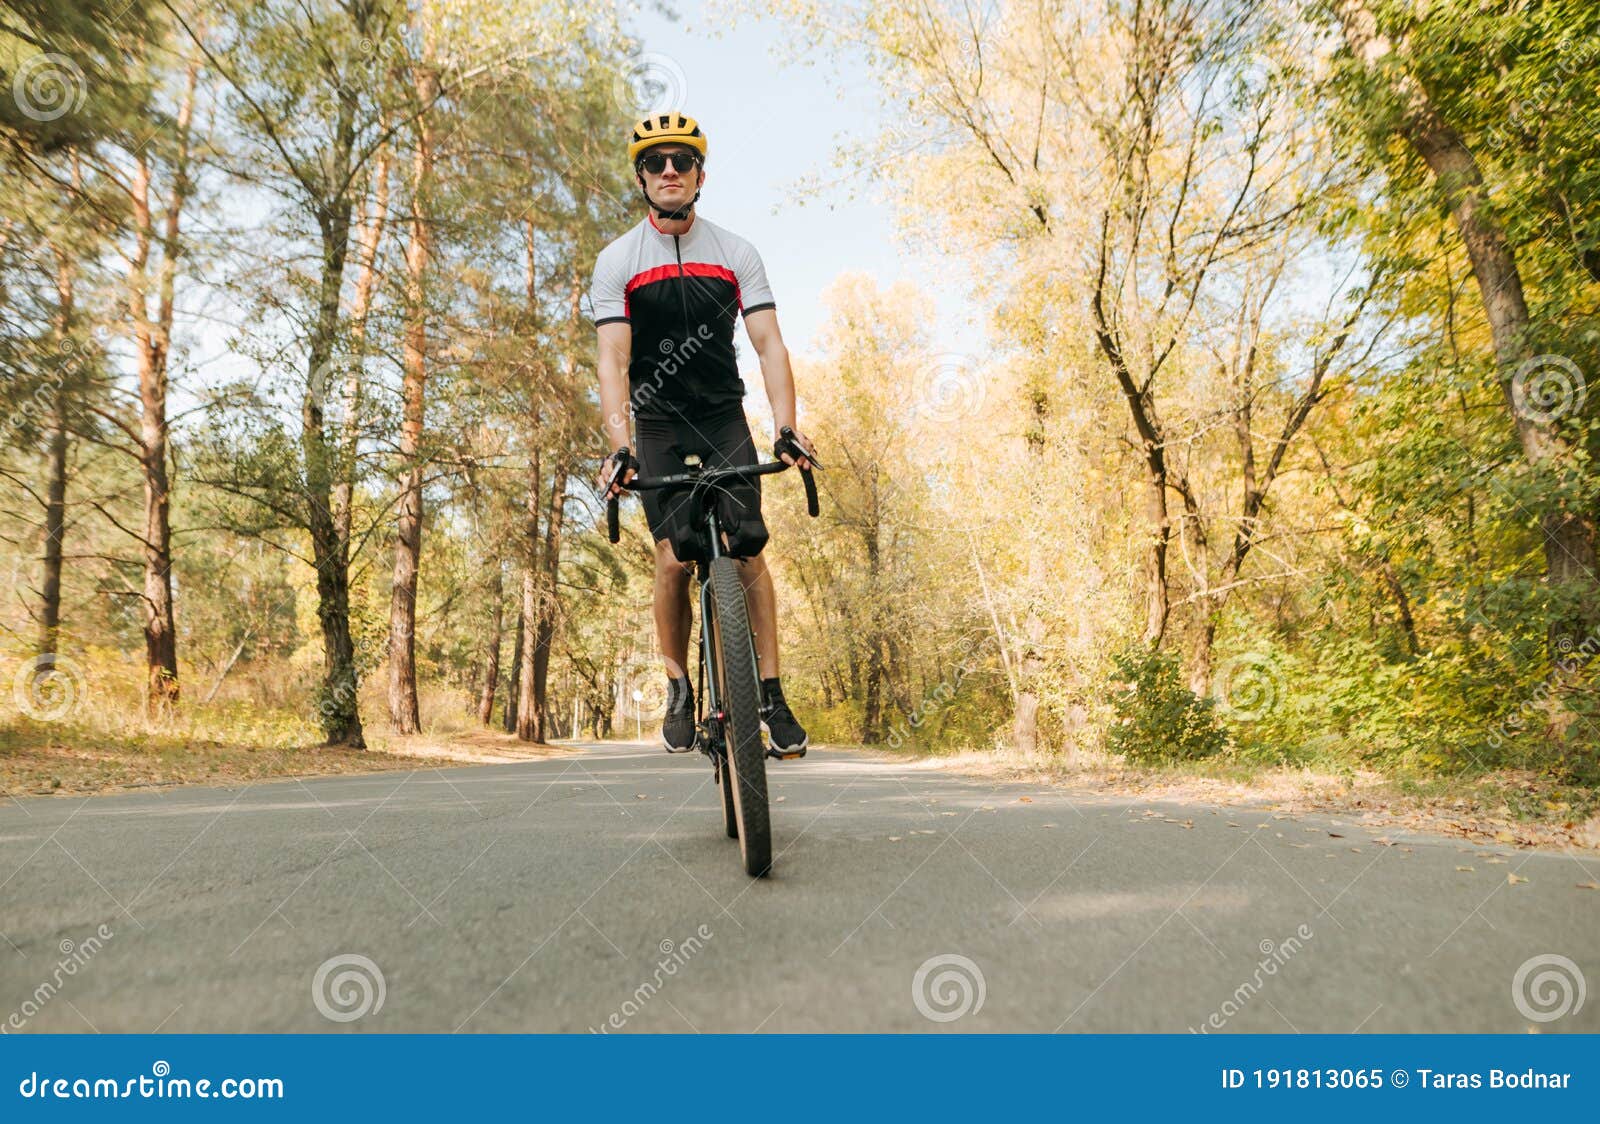 άντρας με στολή ποδηλάτου κάνει ποδήλατο σε ποδηλατοδρόμο. επαγγελματίες  ποδηλάτες ποδηλατοδρόμοι εκτός πόλης. ποδηλατοδρόμος Στοκ Εικόνα - εικόνα  από bicuspids: 191813065